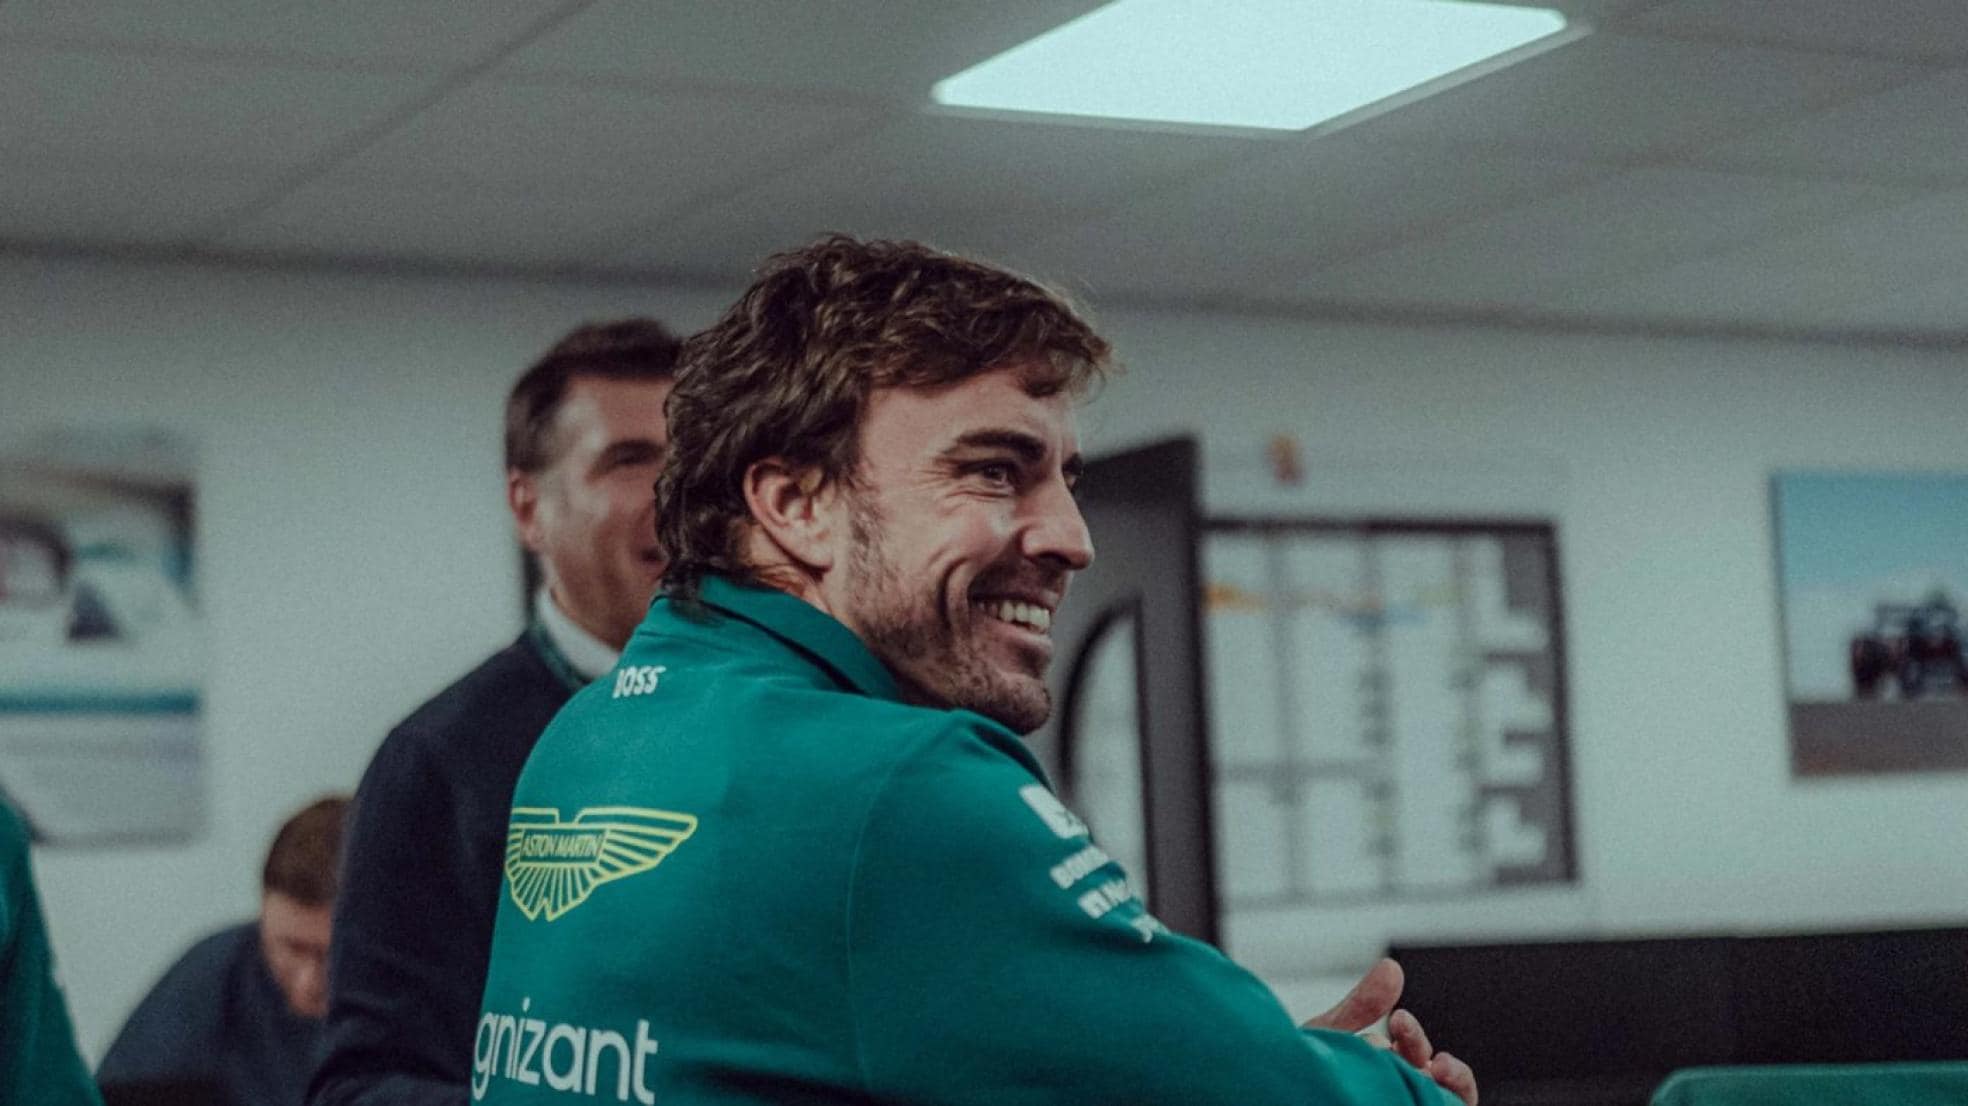 Qué Aston Martin conducirá Fernando Alonso?